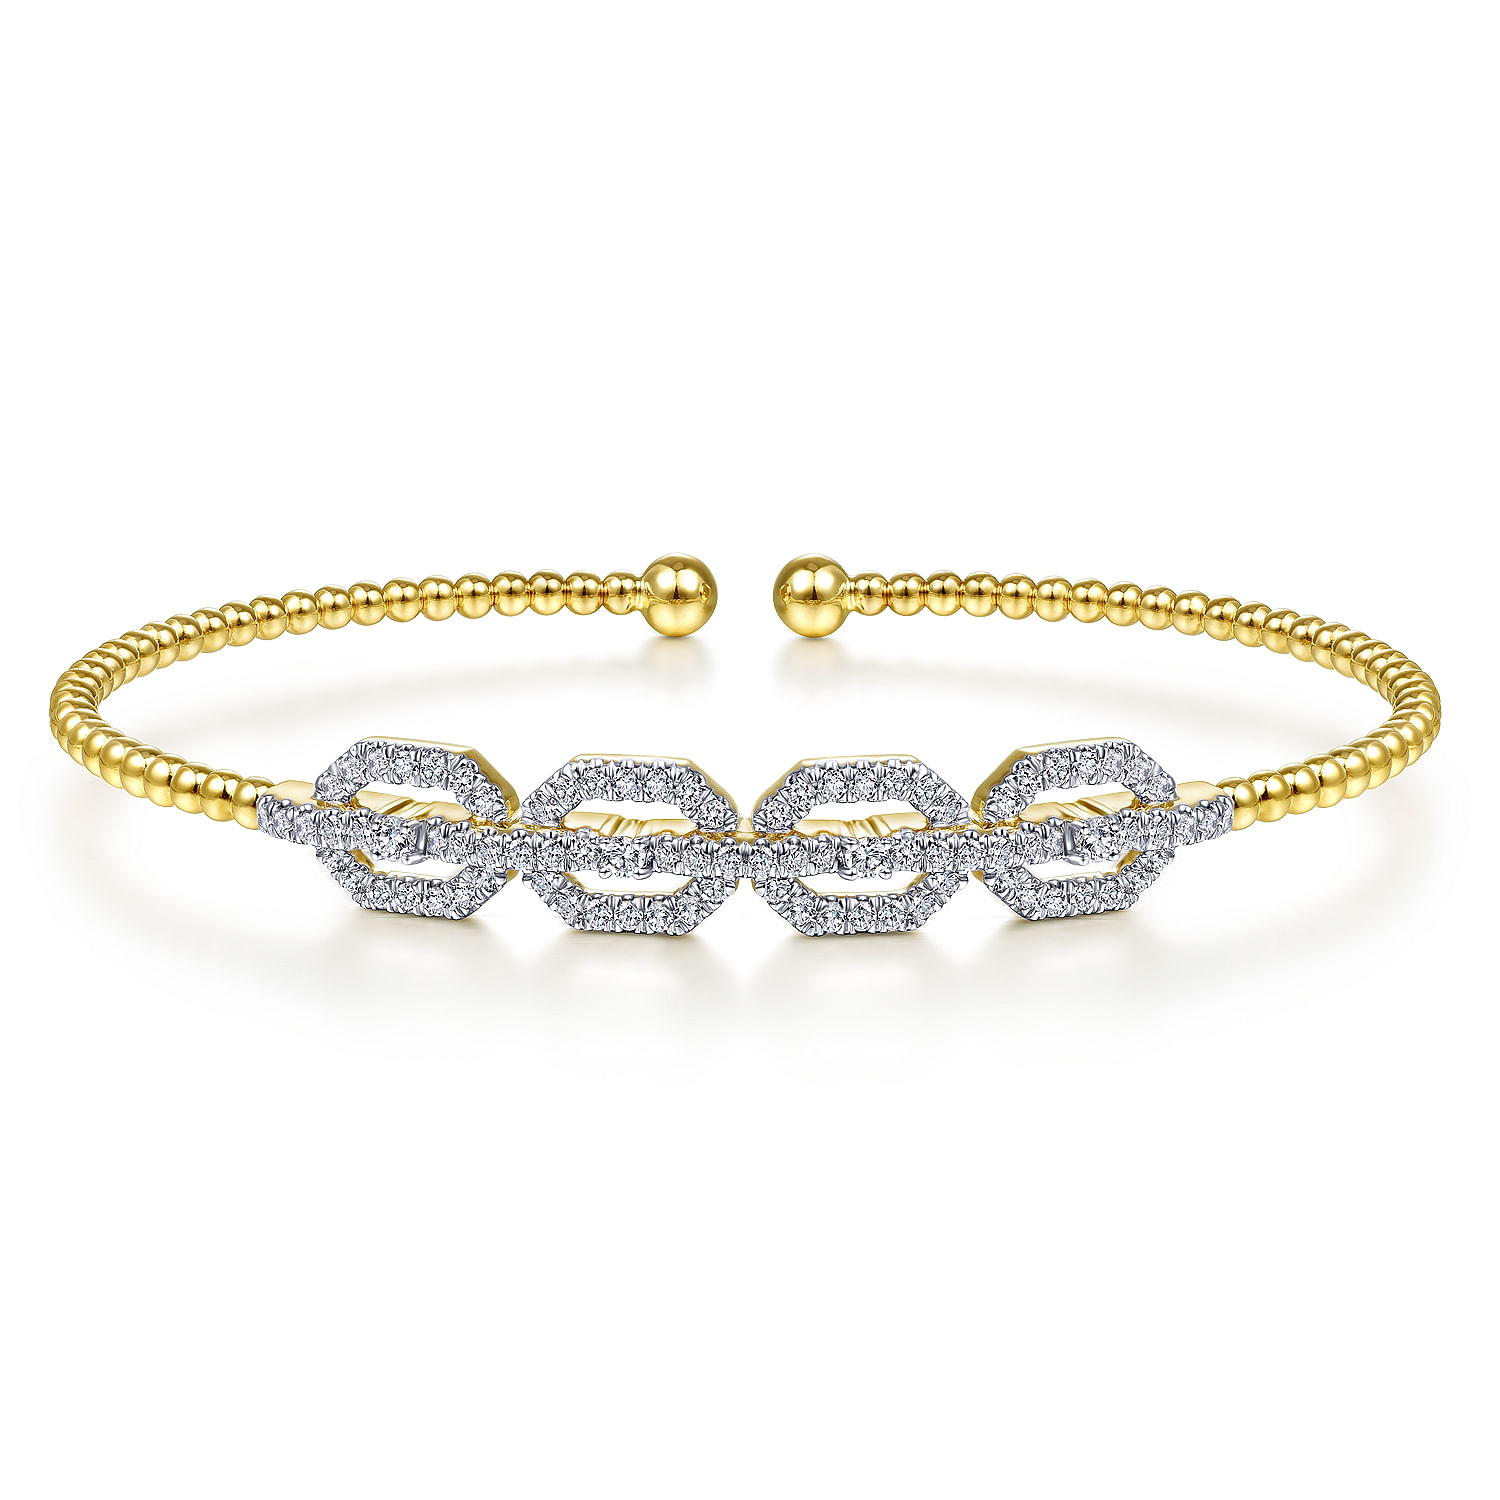 14K Yellow Gold Bujukan Bead Cuff Bracelet with Diamond Pavé Links